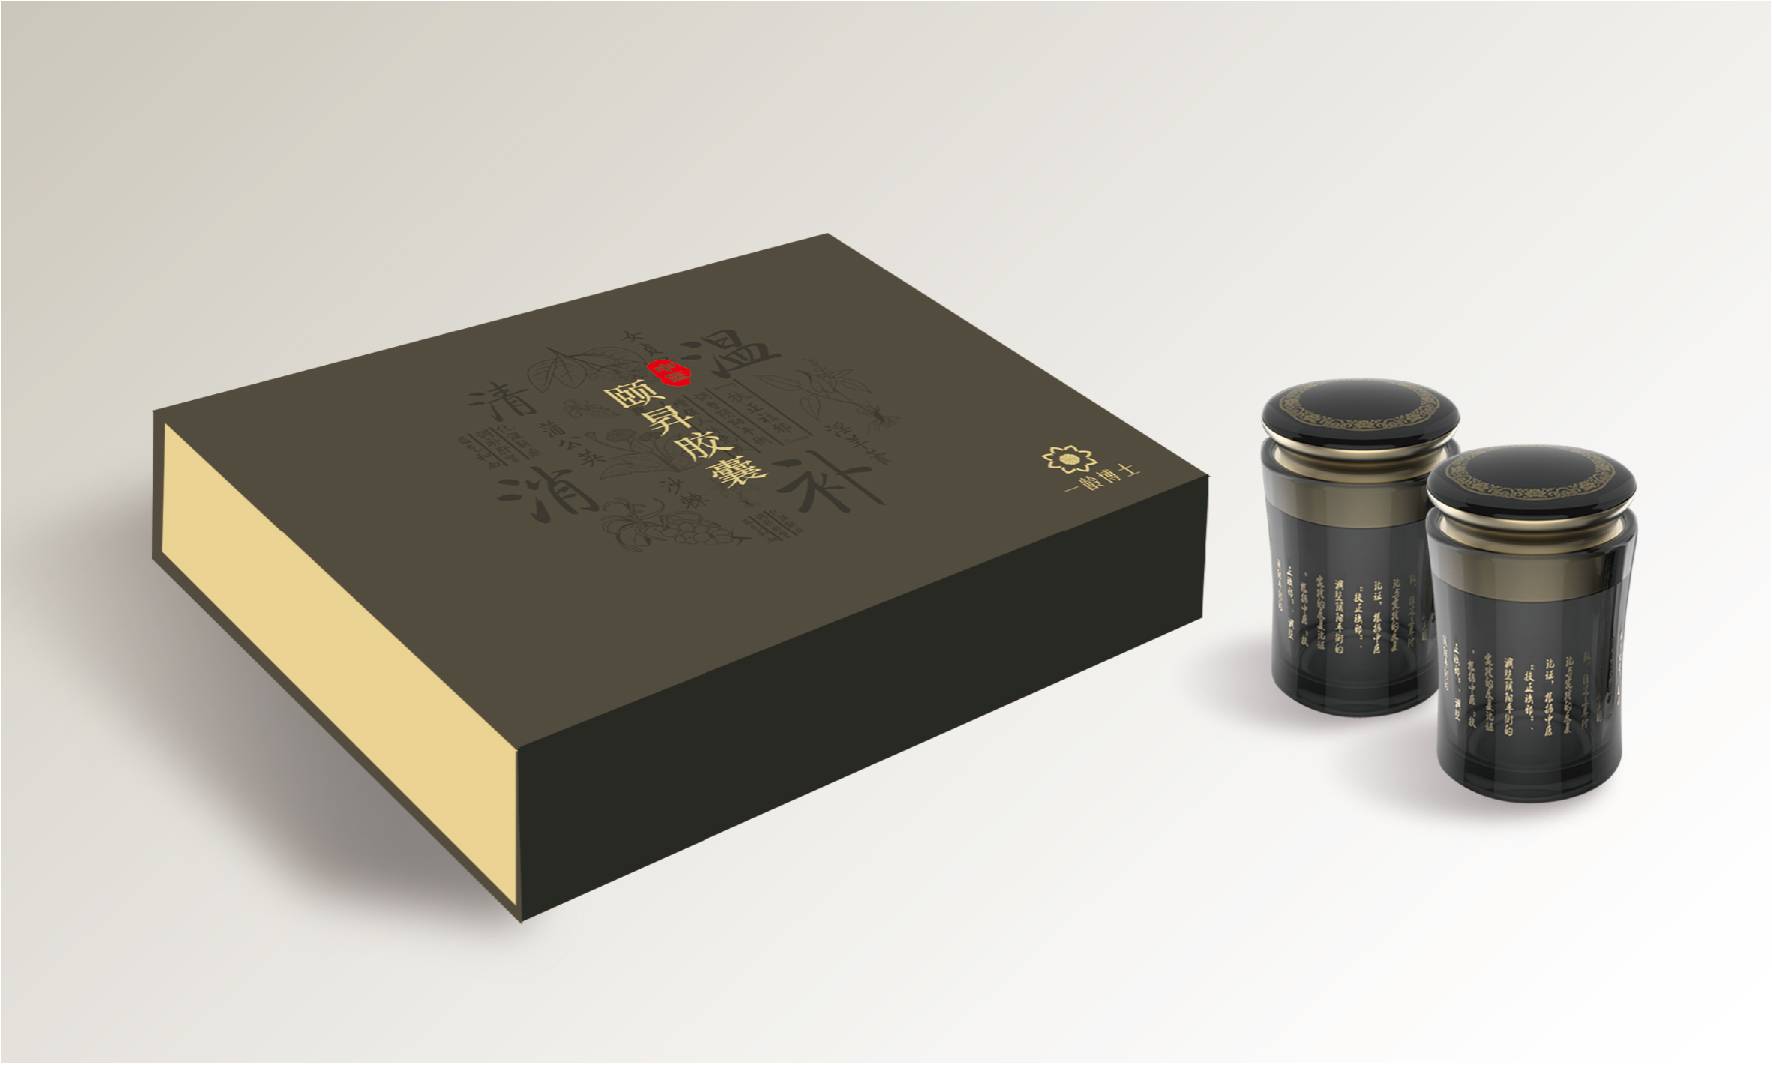 畅销扬州礼盒包装设计公司作品TOP3名单发布 